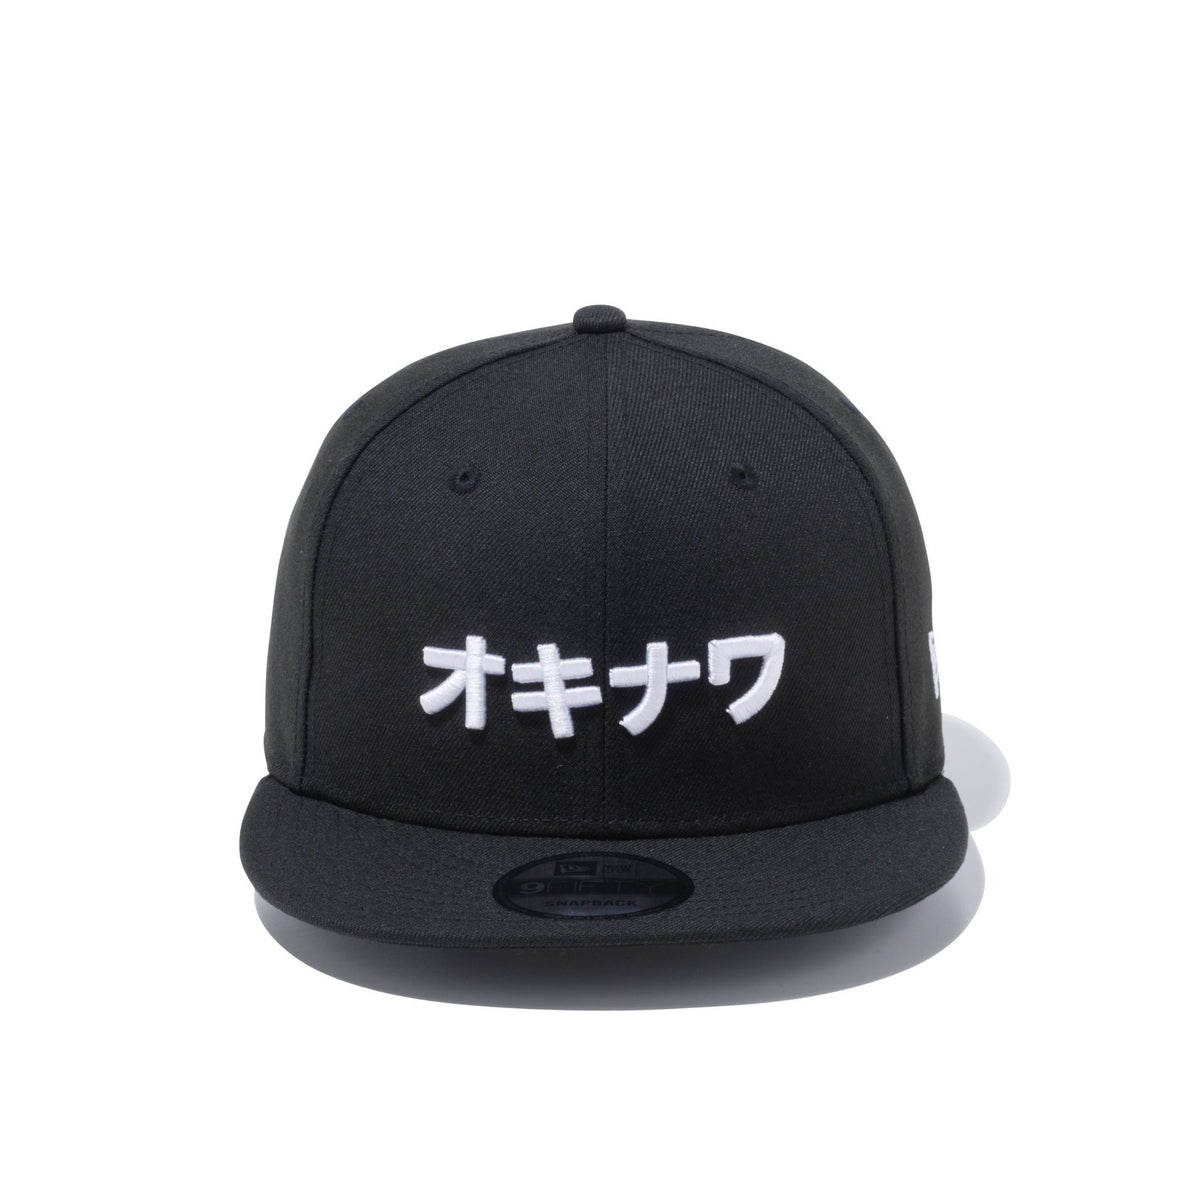 【格安直販】9FIFTY ダウンタウン New Era カタカナロゴ ブラック S/M 帽子